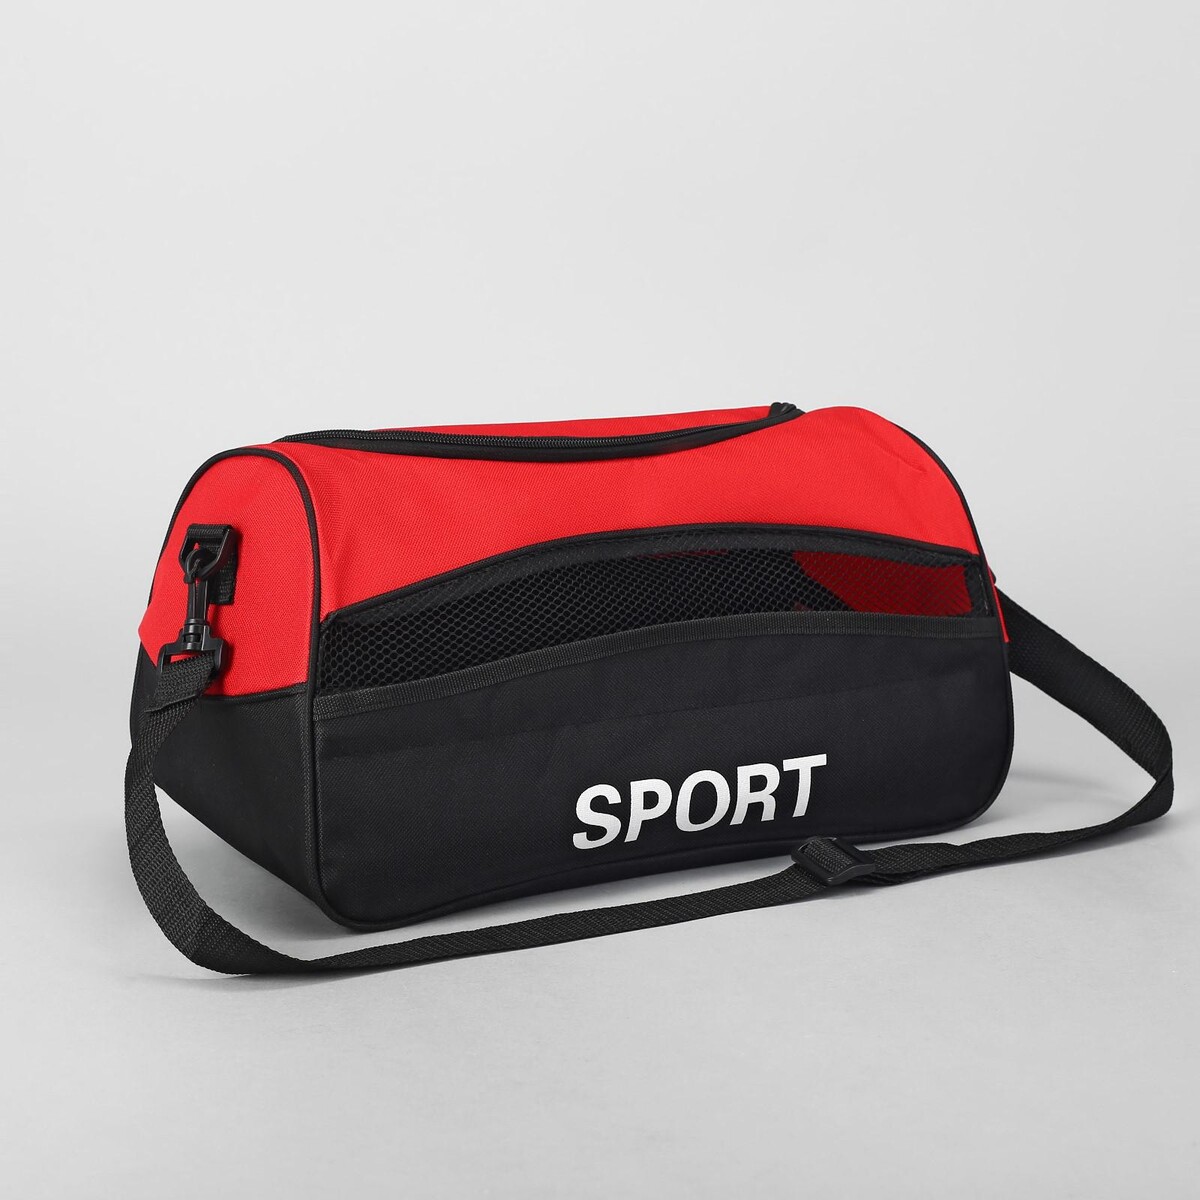 Сумка спортивная на молнии, наружный карман, длинный ремень, цвет красный/черный